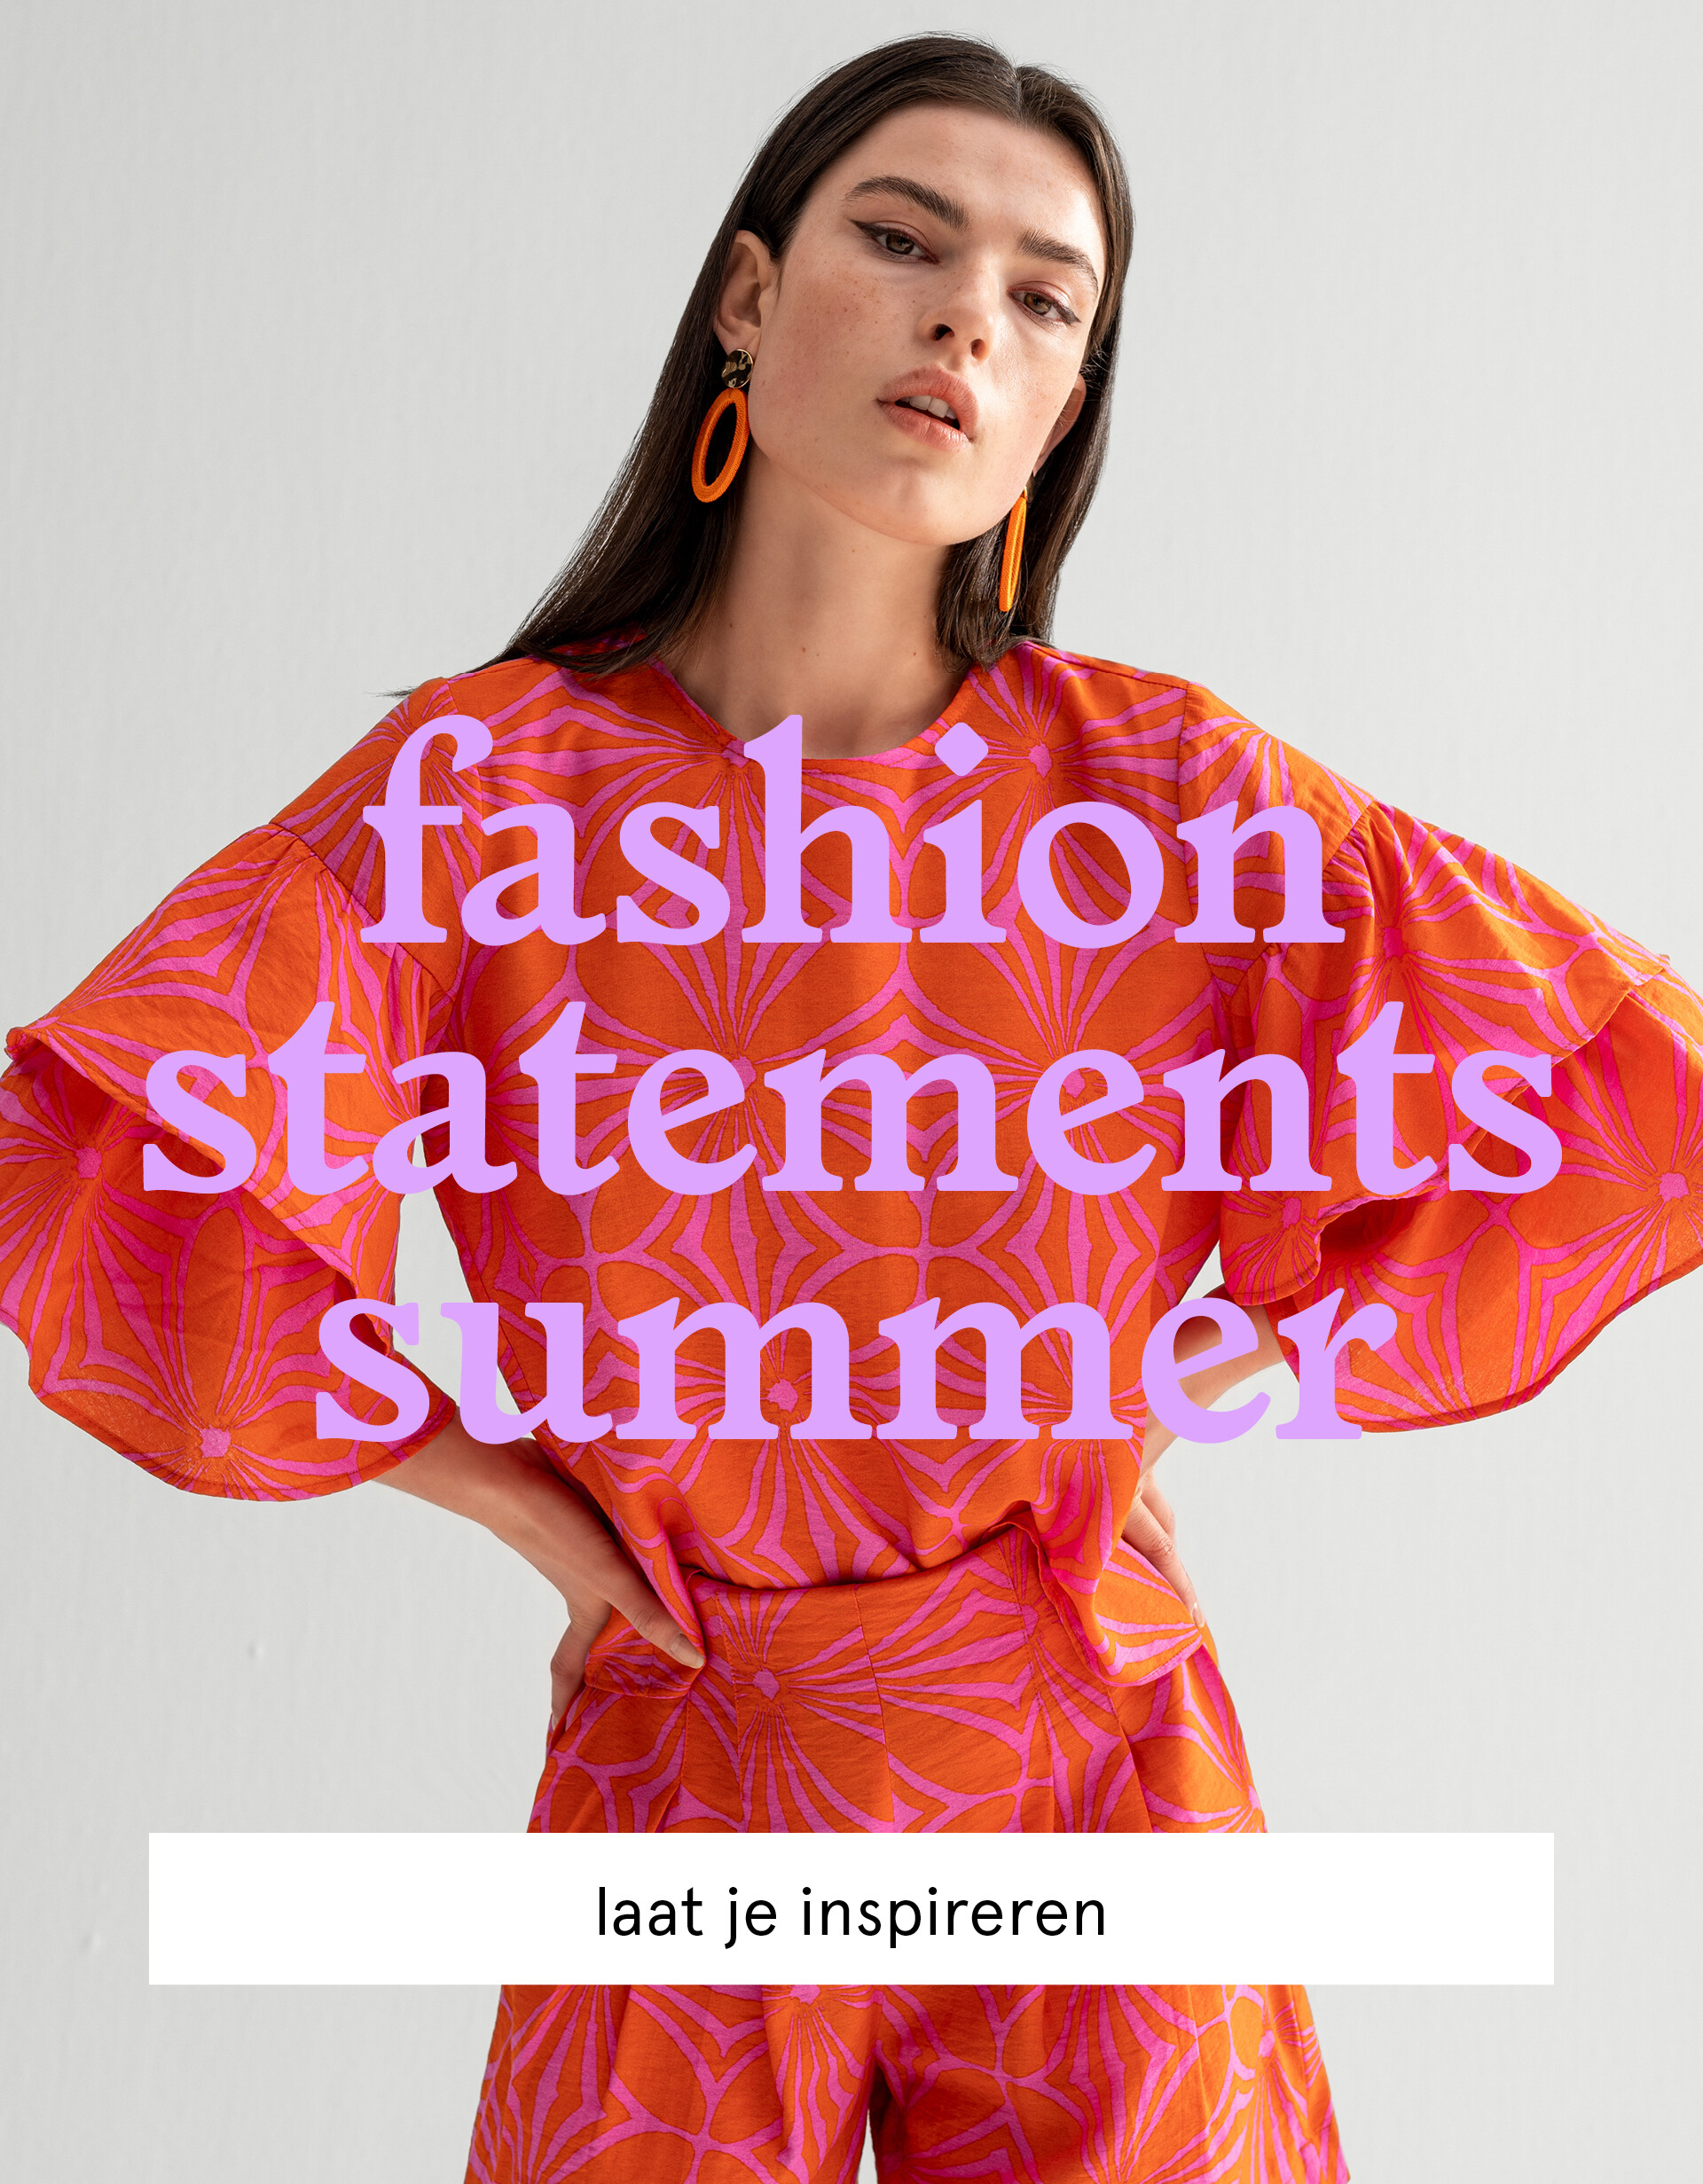 fashion statements summer